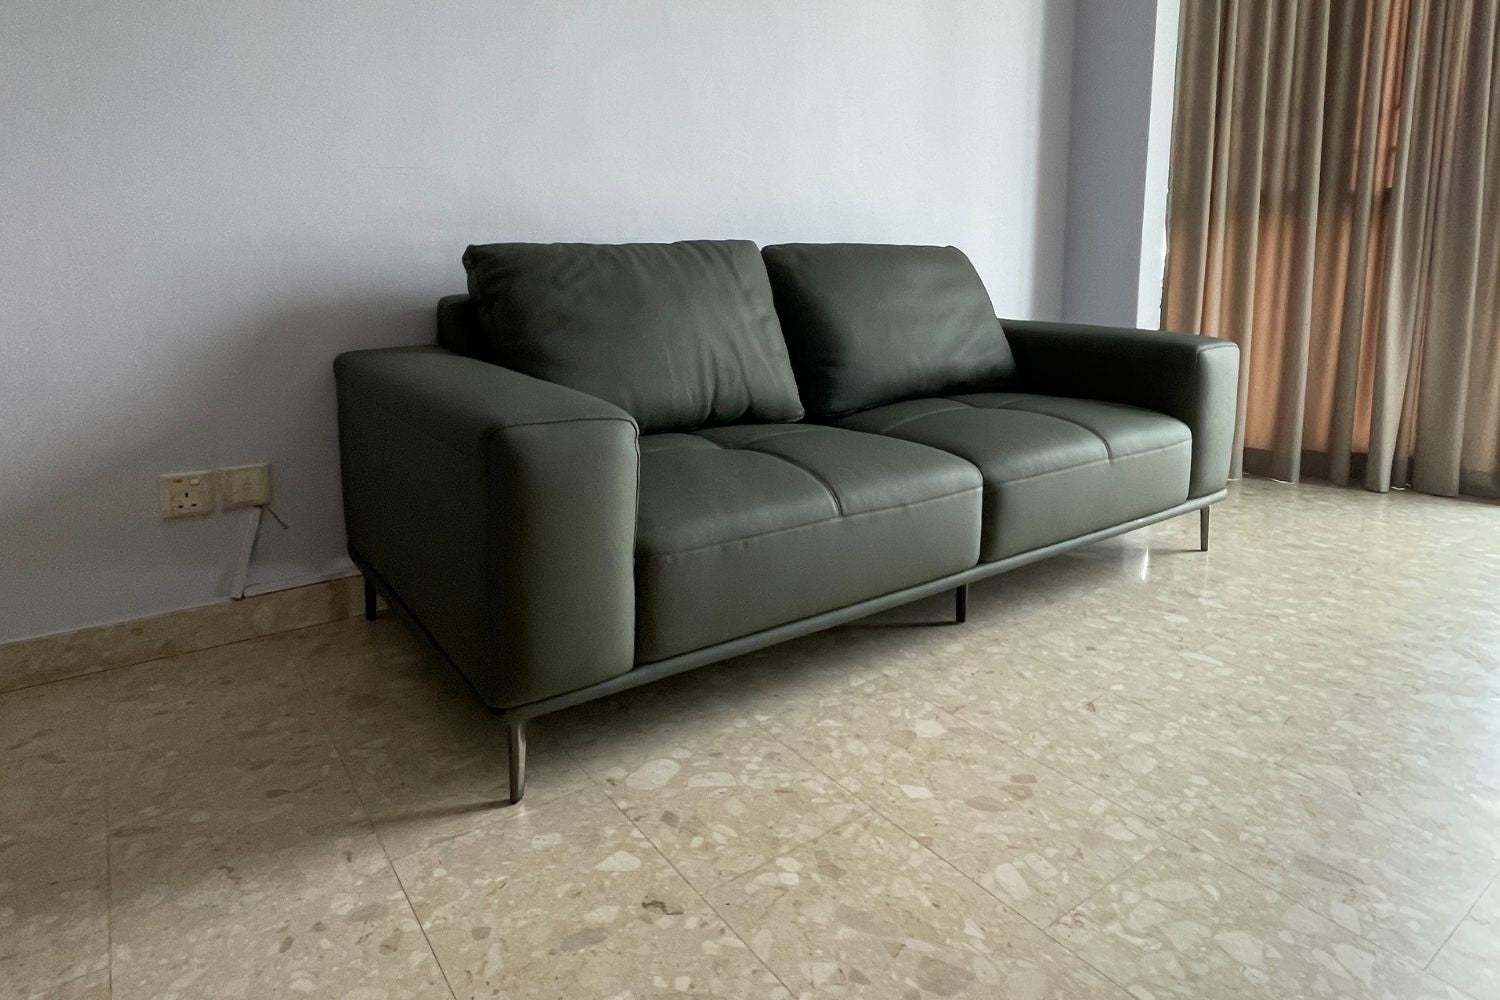 Calm 210cm Grey Half Leather Sofa Ms Yung | Apr 24